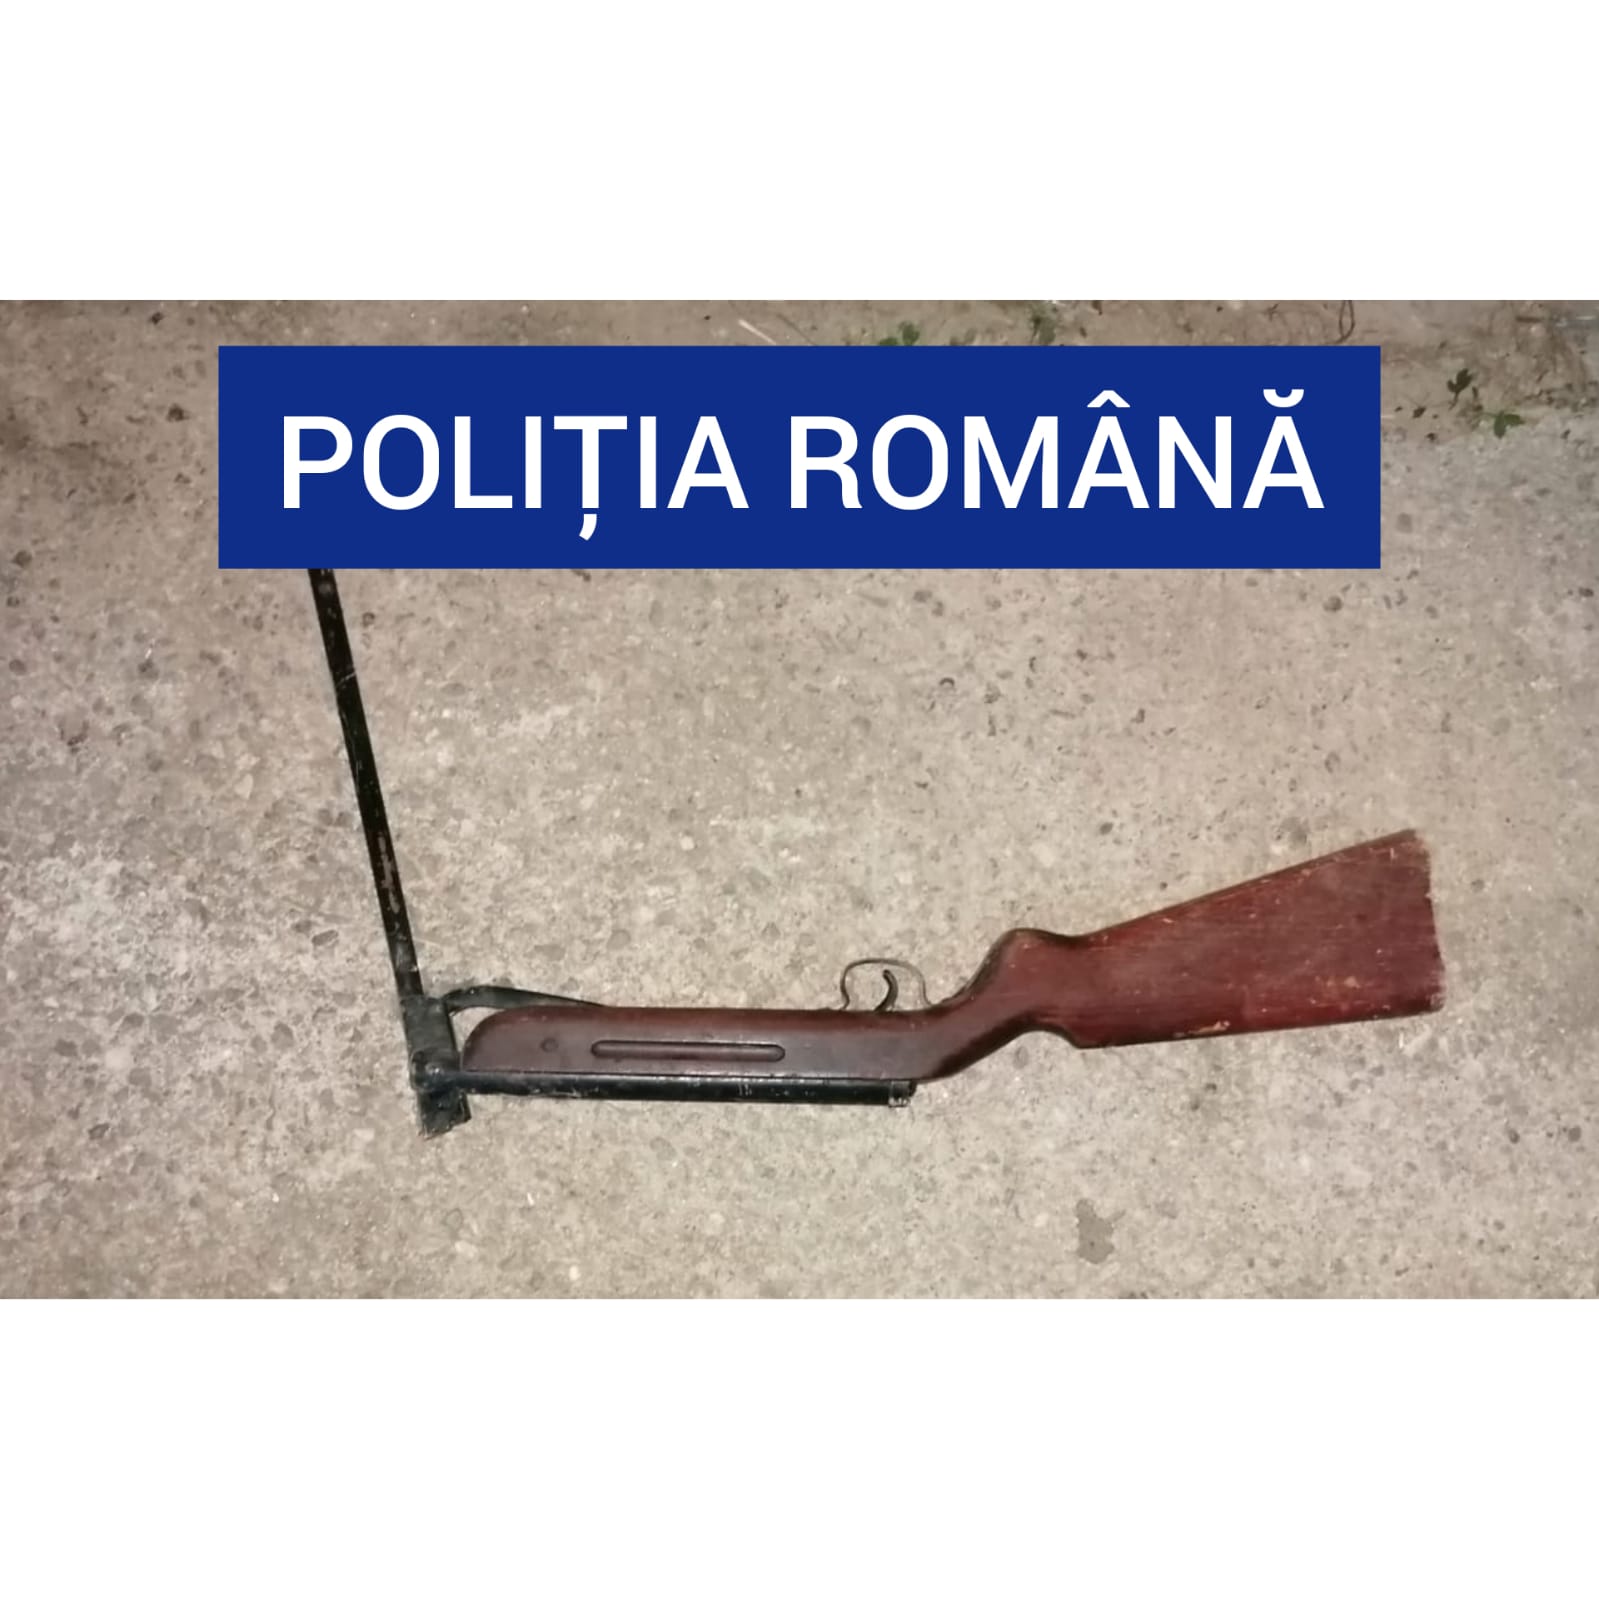 leakage Pure Dated Armă cu aer comprimat deținută ilegal, ridicată de polițiștii din  Caransebeş | Radio România Reșița